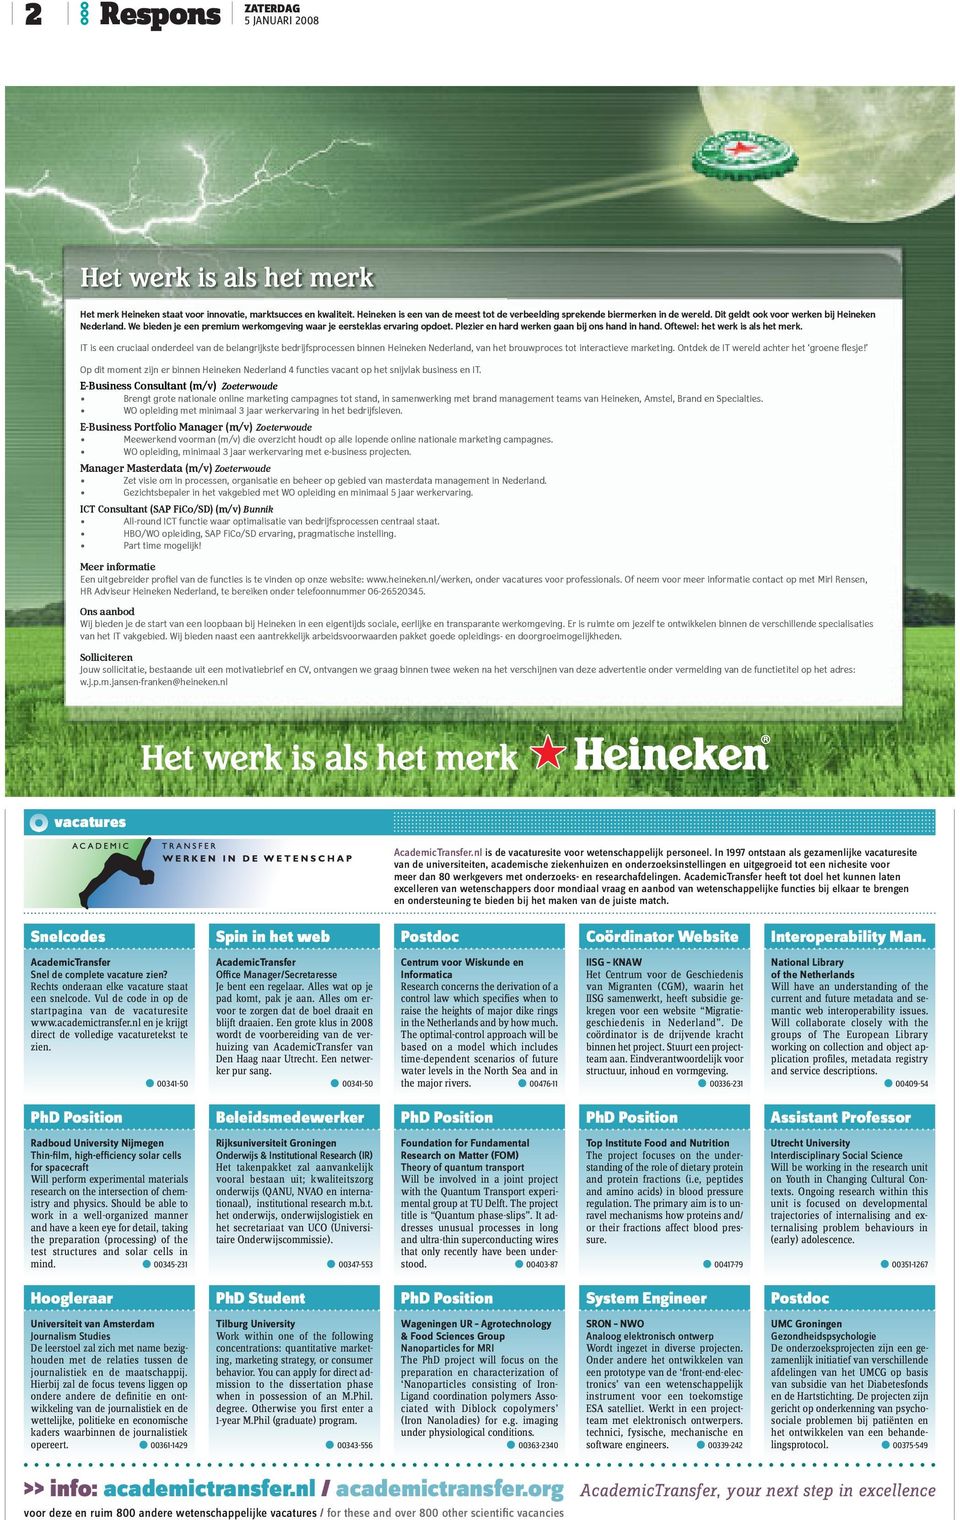 Oftewel: het werk is als het merk. IT is een cruciaal onderdeel van de belangrijkste bedrijfsprocessen binnen Heineken Nederland, van het brouwproces tot interactieve marketing.